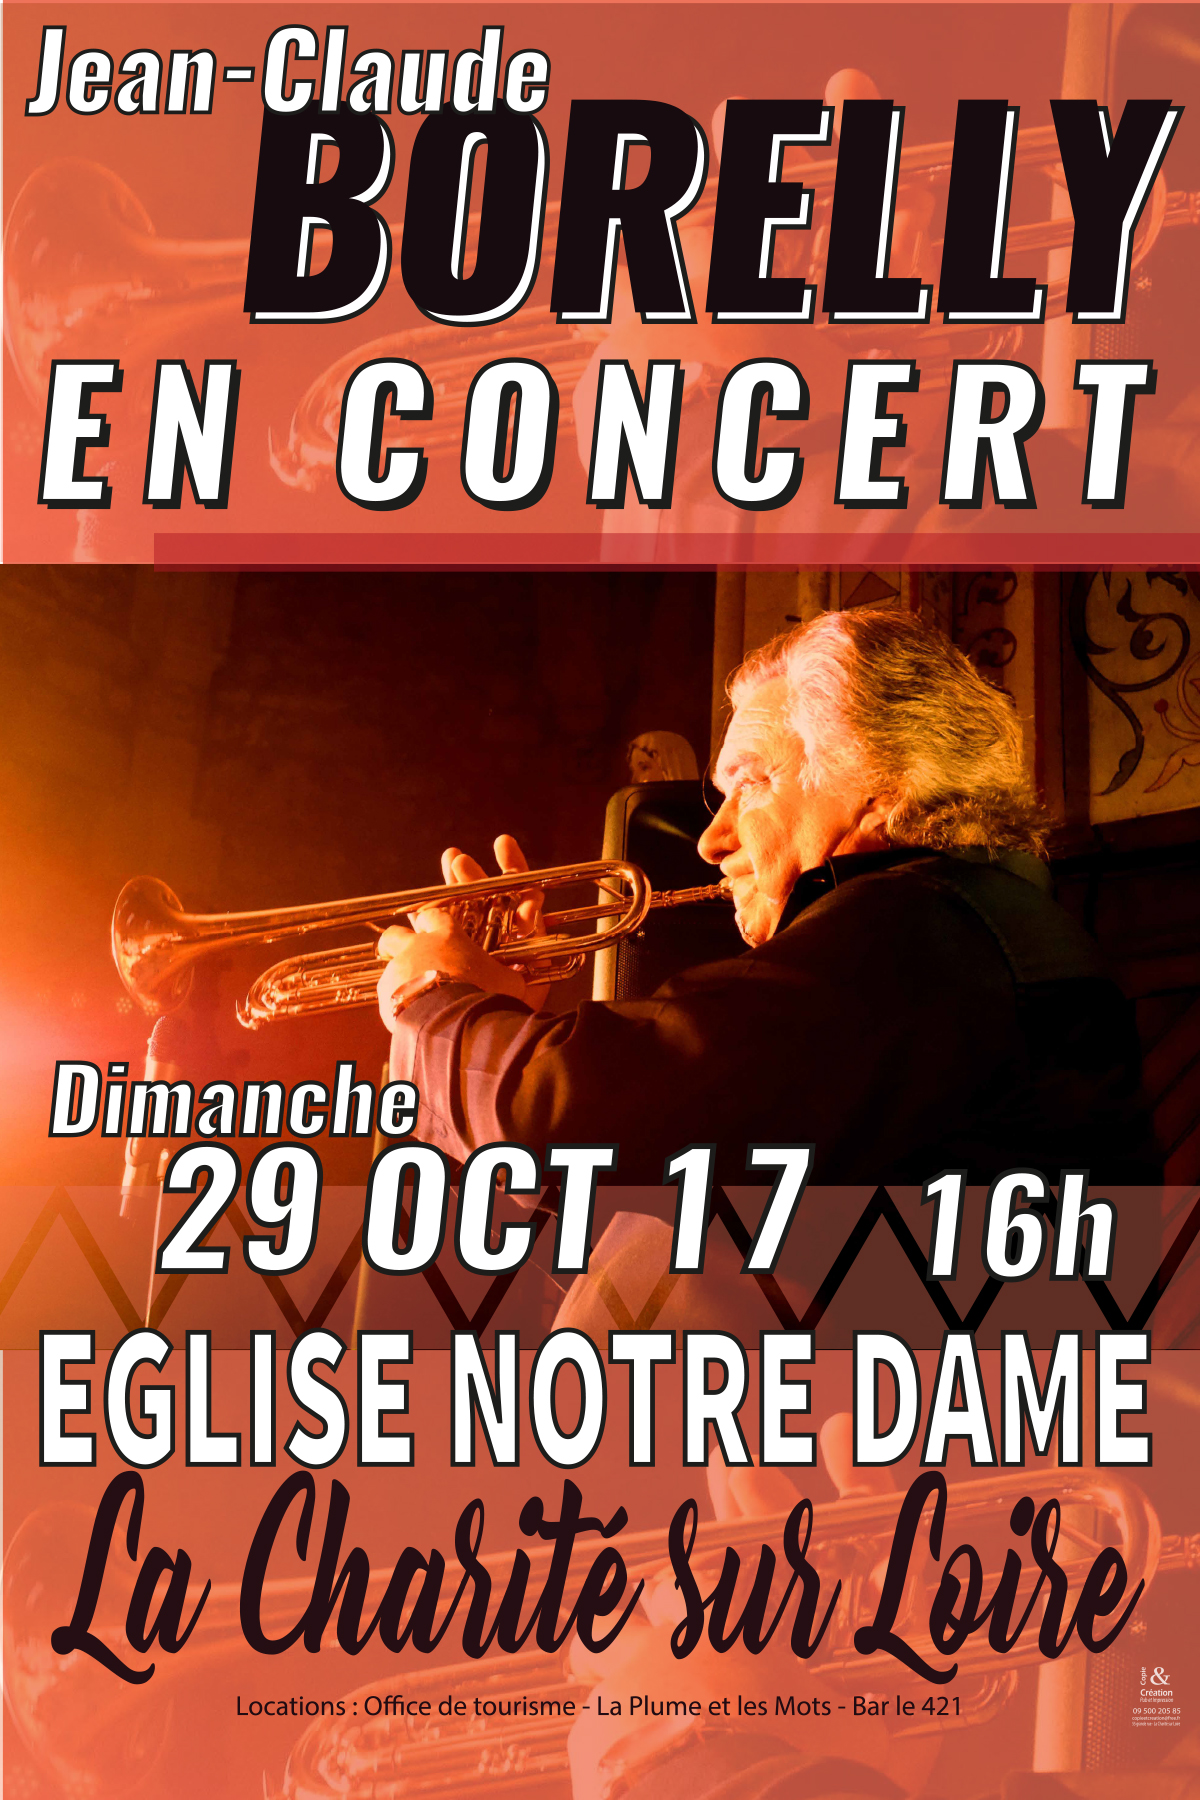 Concert de Jean-Claude Borelly, le 29 octobre à l'église Notre Dame de La Charité sur Loire